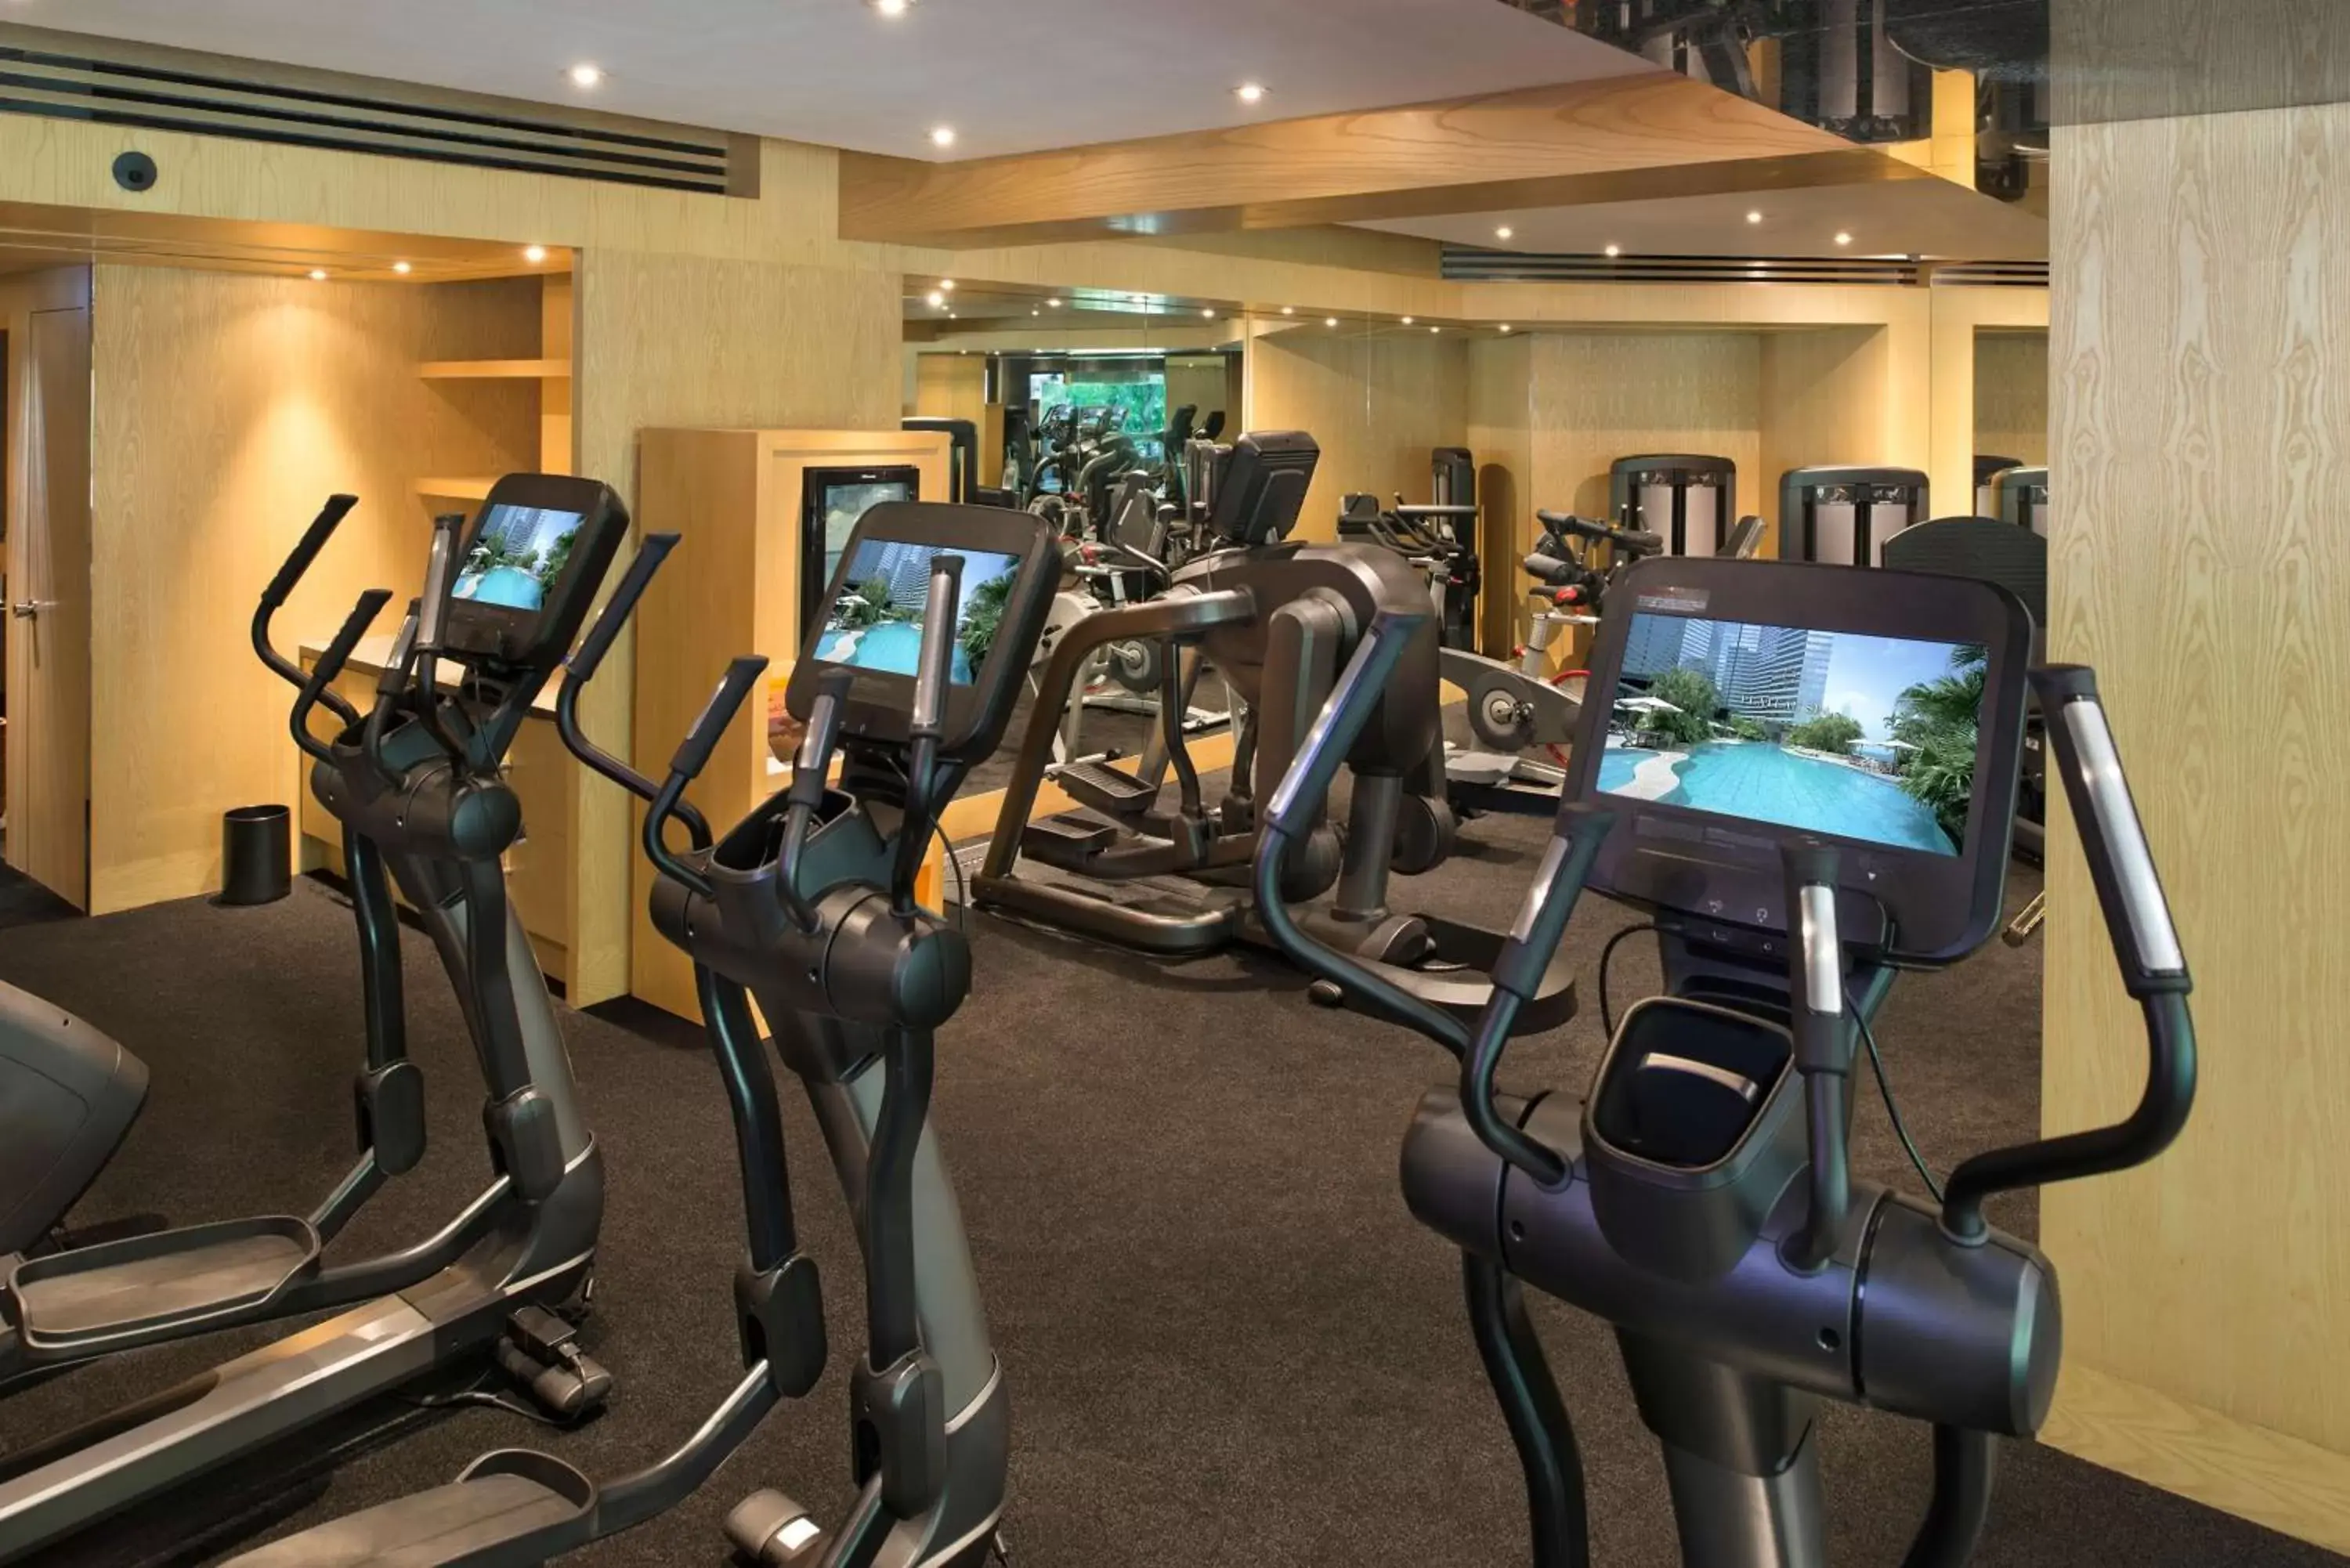 Fitness centre/facilities, Fitness Center/Facilities in Grand Hyatt Hong Kong